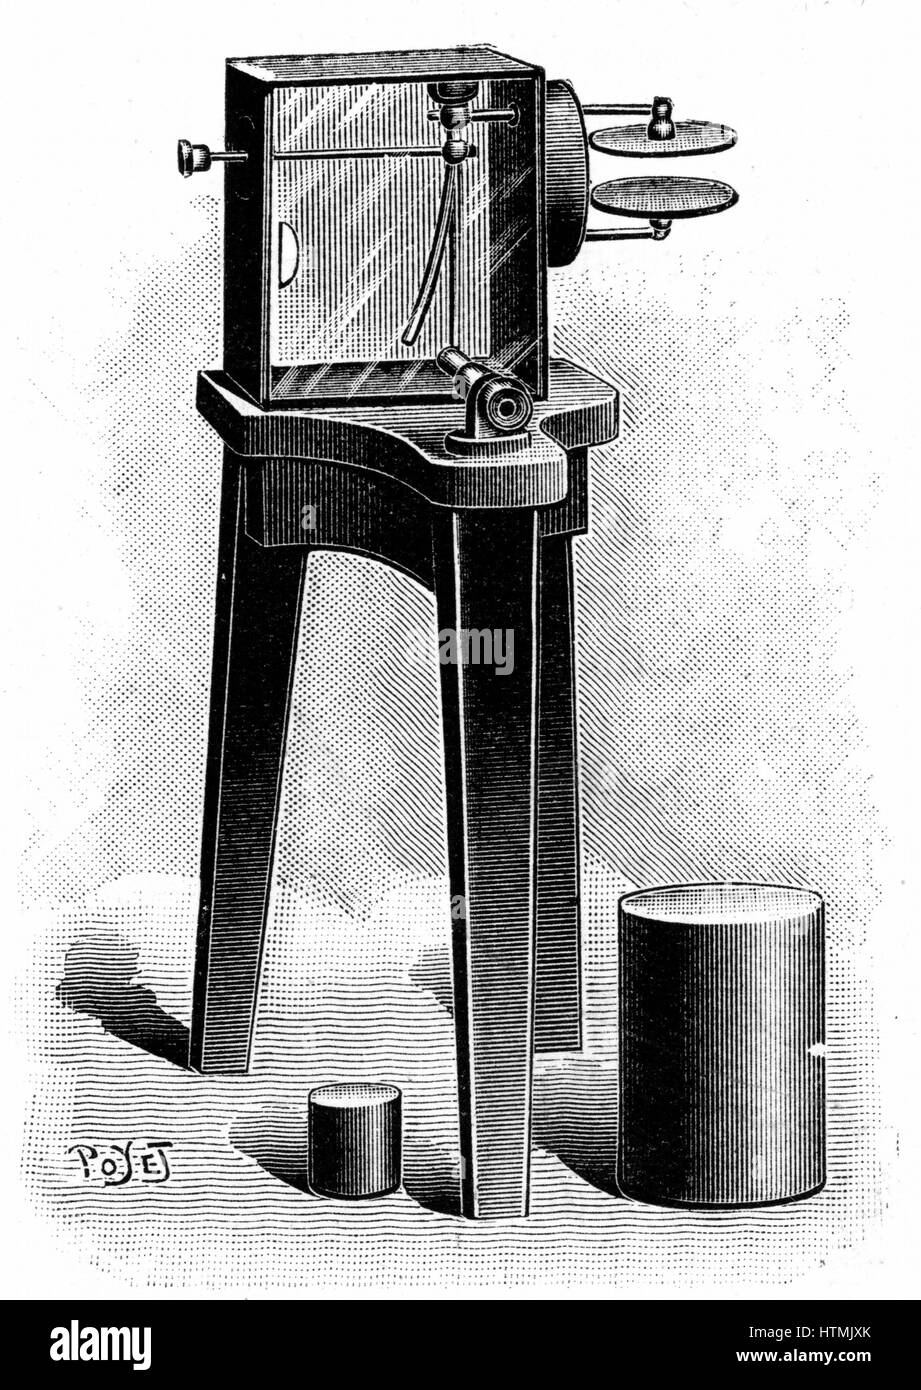 Elektroskops ausgestattet mit Mikroskop, verwendet in den Kurien Labor, Paris, Vorhandensein von Radioaktivität zu erkennen. Gravur veröffentlicht 1904 Stockfoto